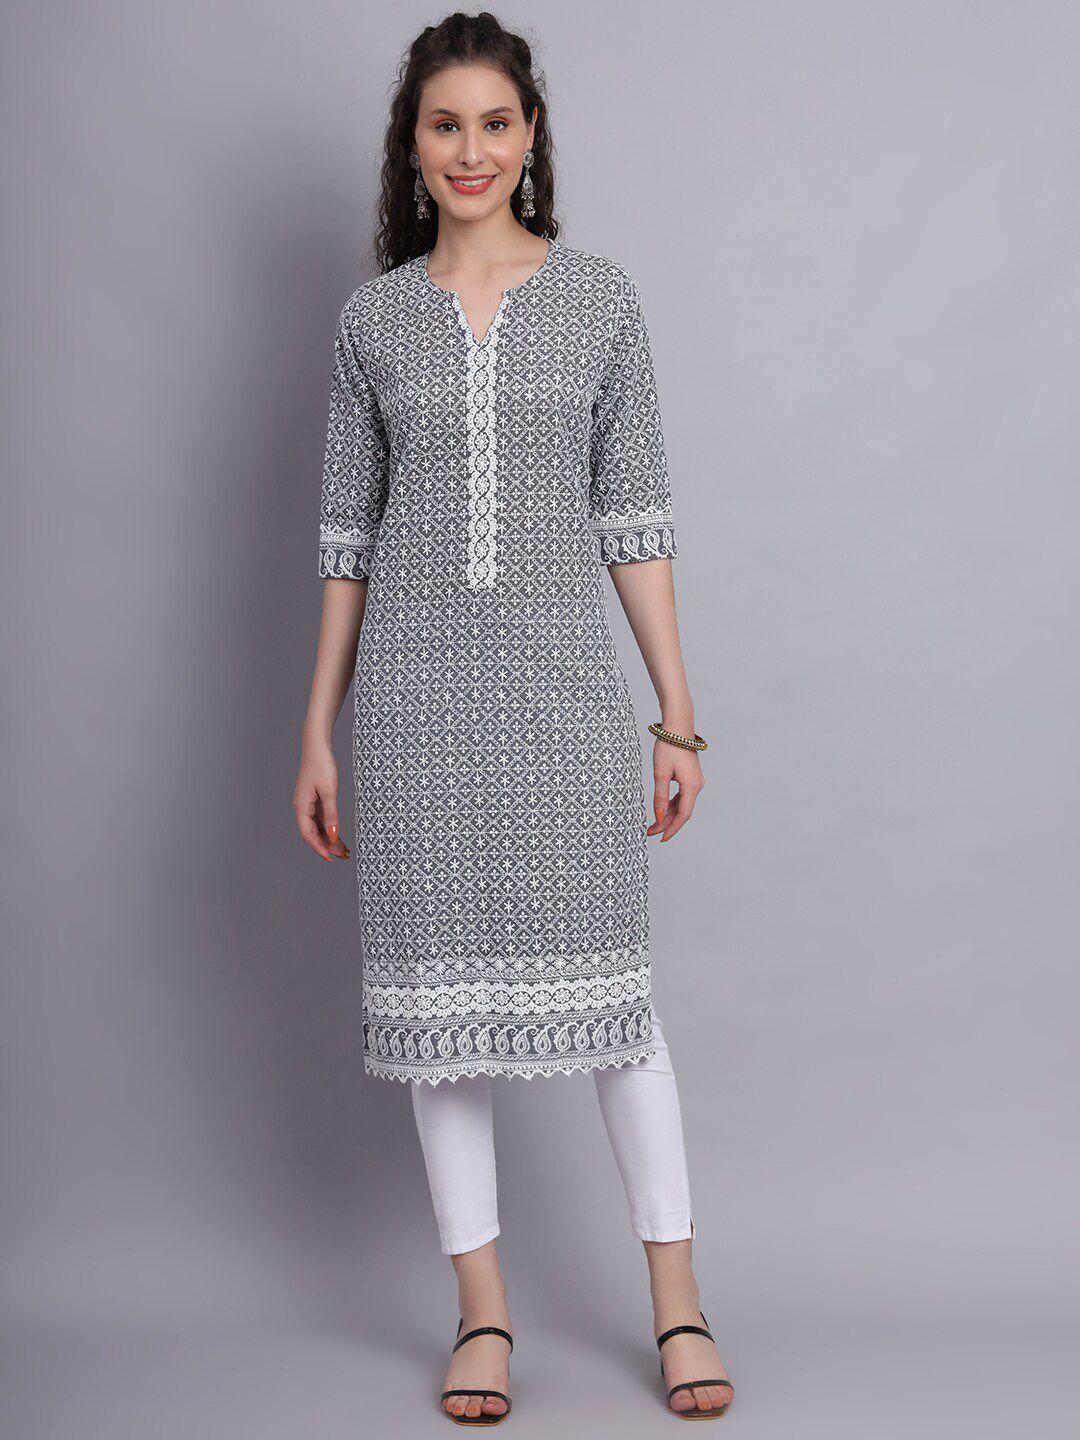 vastraa fusion ethnic motifs embroidered pure cotton thread work kurta